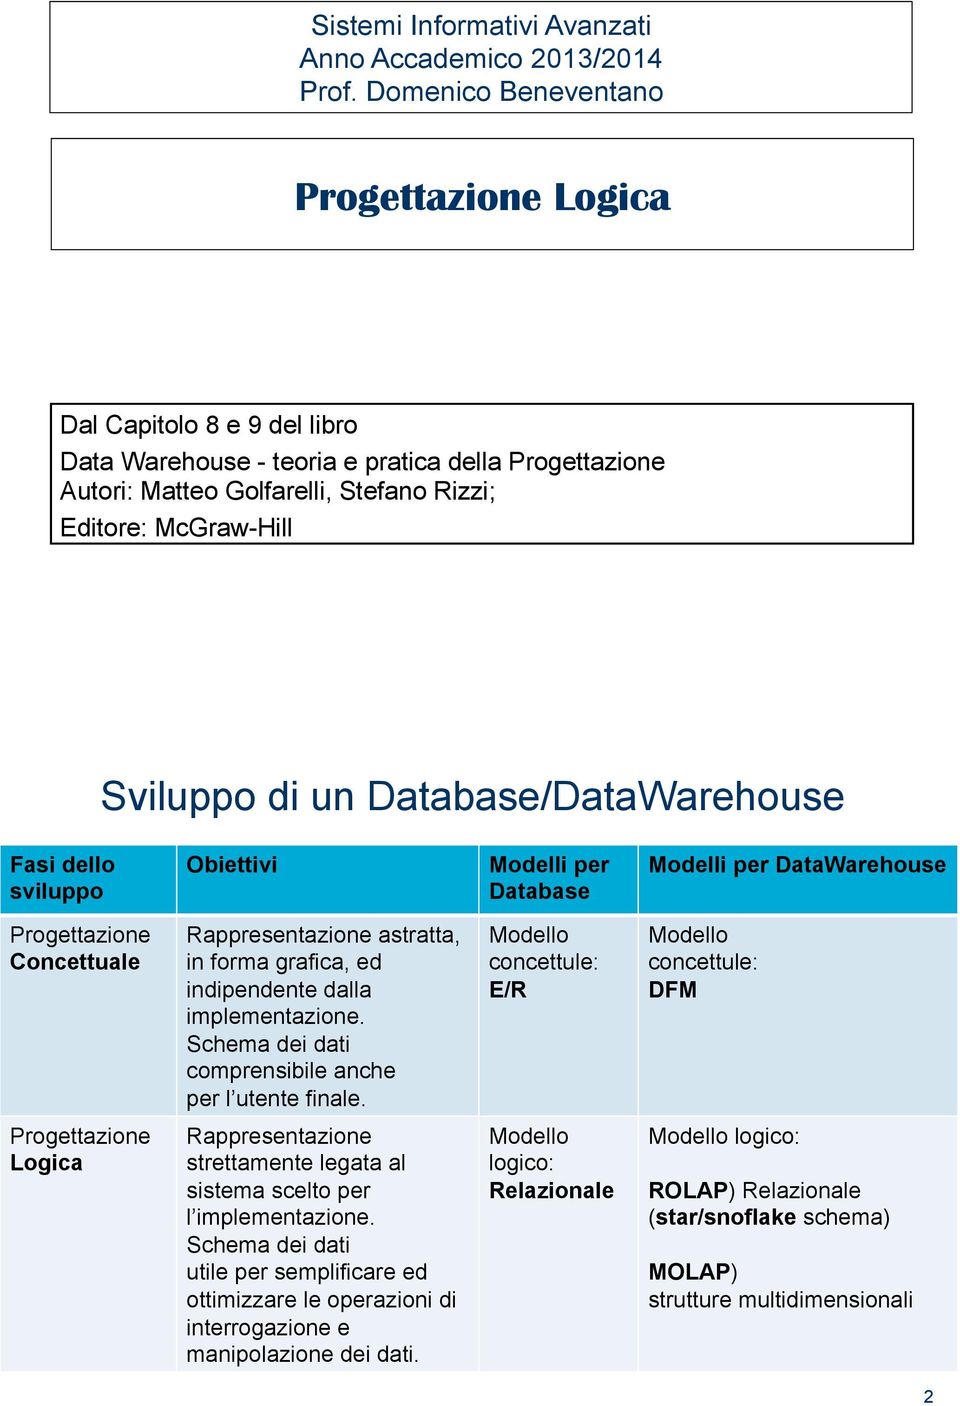 un Database/DataWarehouse Fasi dello sviluppo Obiettivi Modelli per Database Modelli per DataWarehouse Progettazione Concettuale Rappresentazione astratta, in forma grafica, ed indipendente dalla